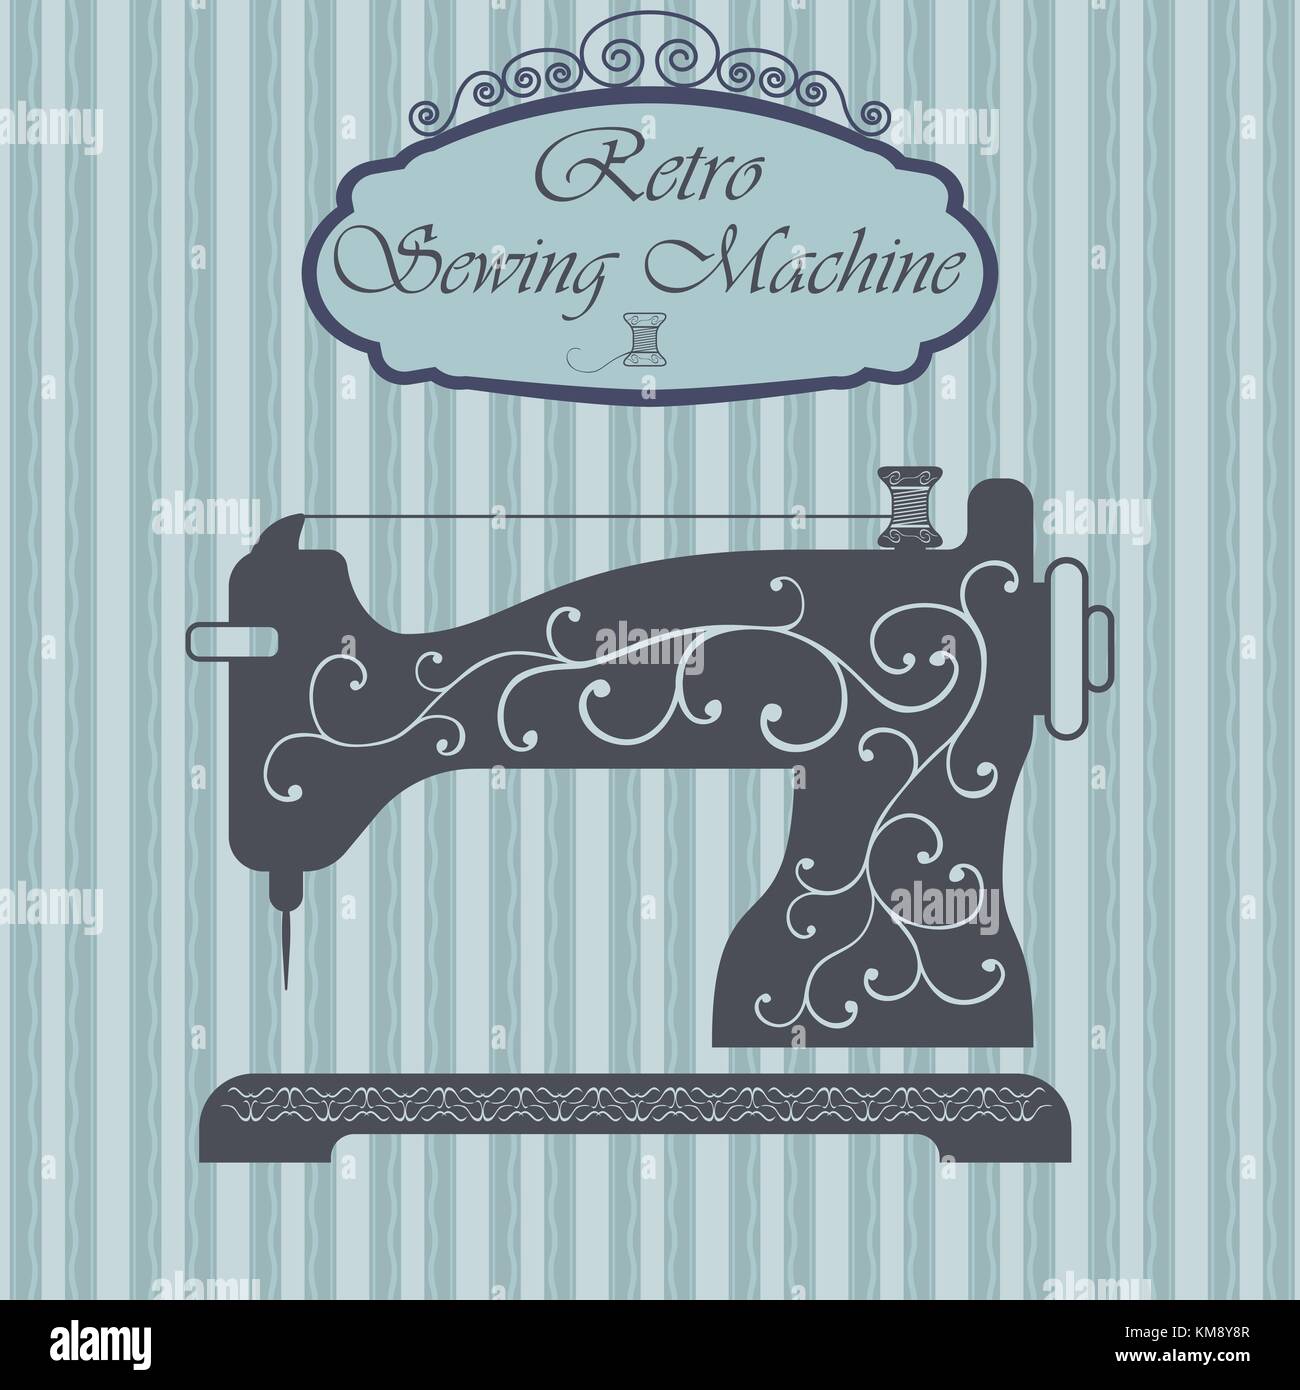 Ilustración de máquina de coser vintage con texto